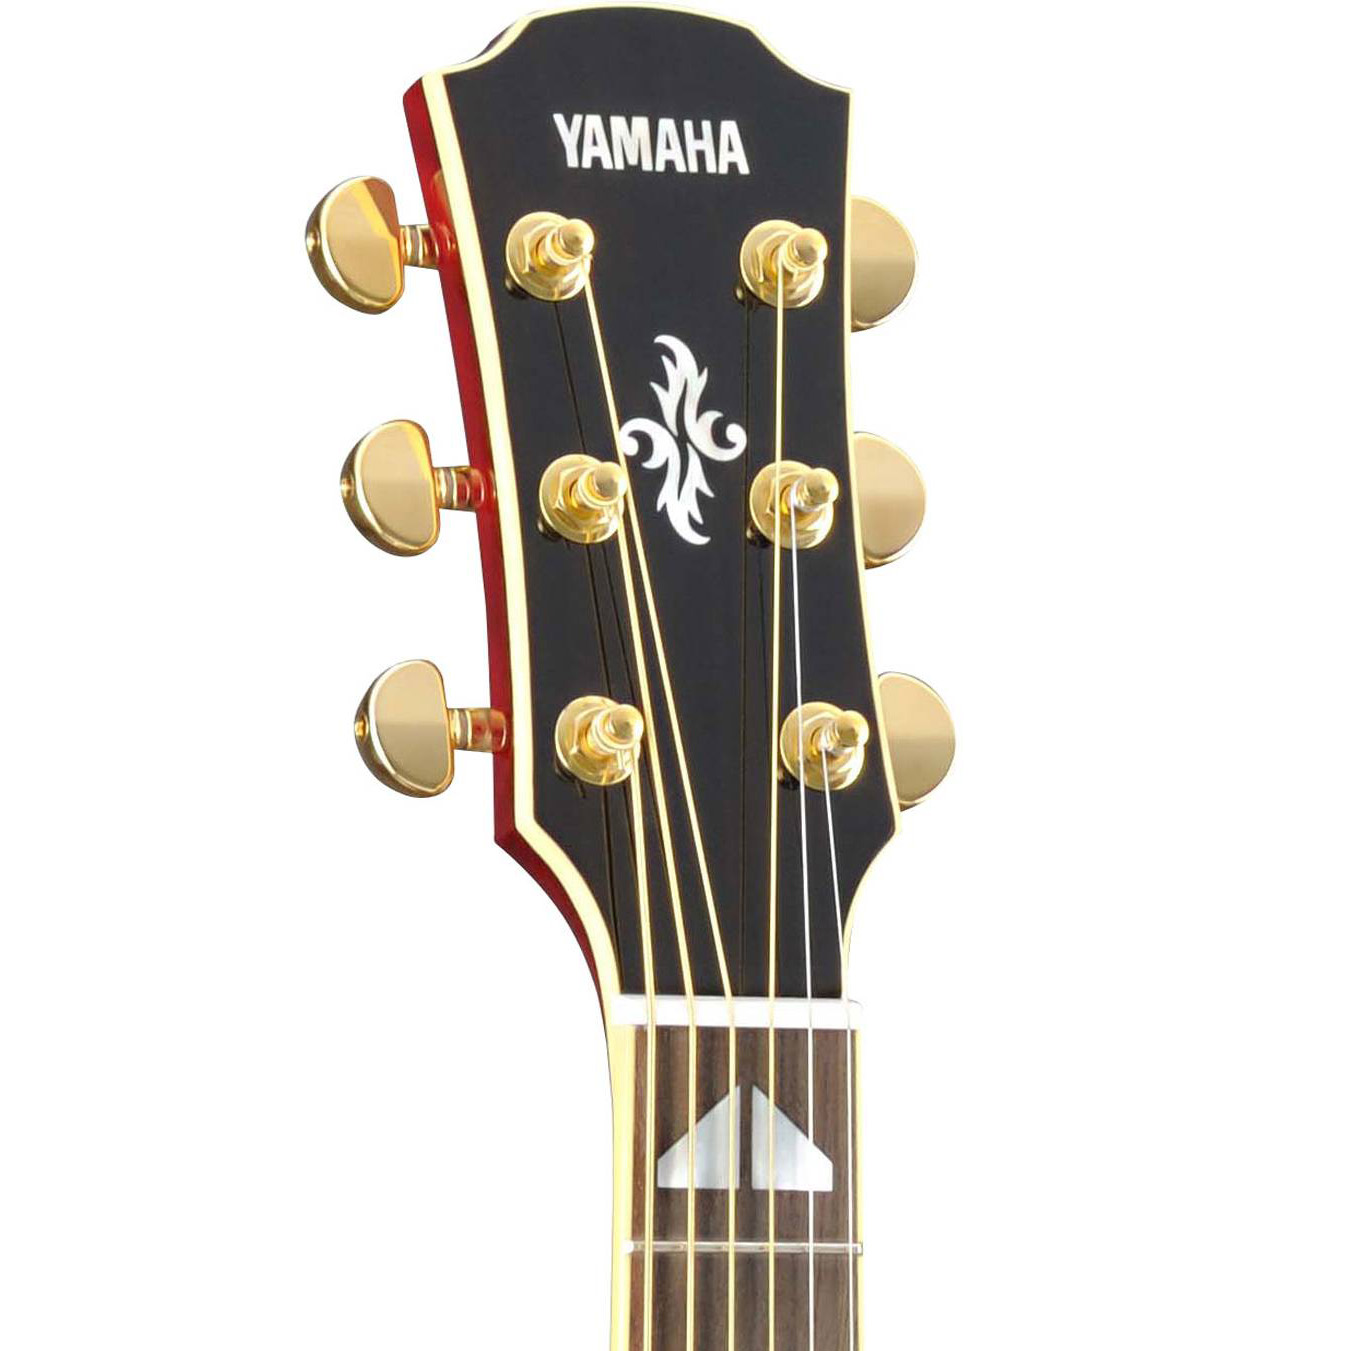 Акустическая головка. Гитара Yamaha lj16. Гитара Yamaha ll6 are. Акустическая гитара Ямаха ll6. Ll16-12 are Yamaha.